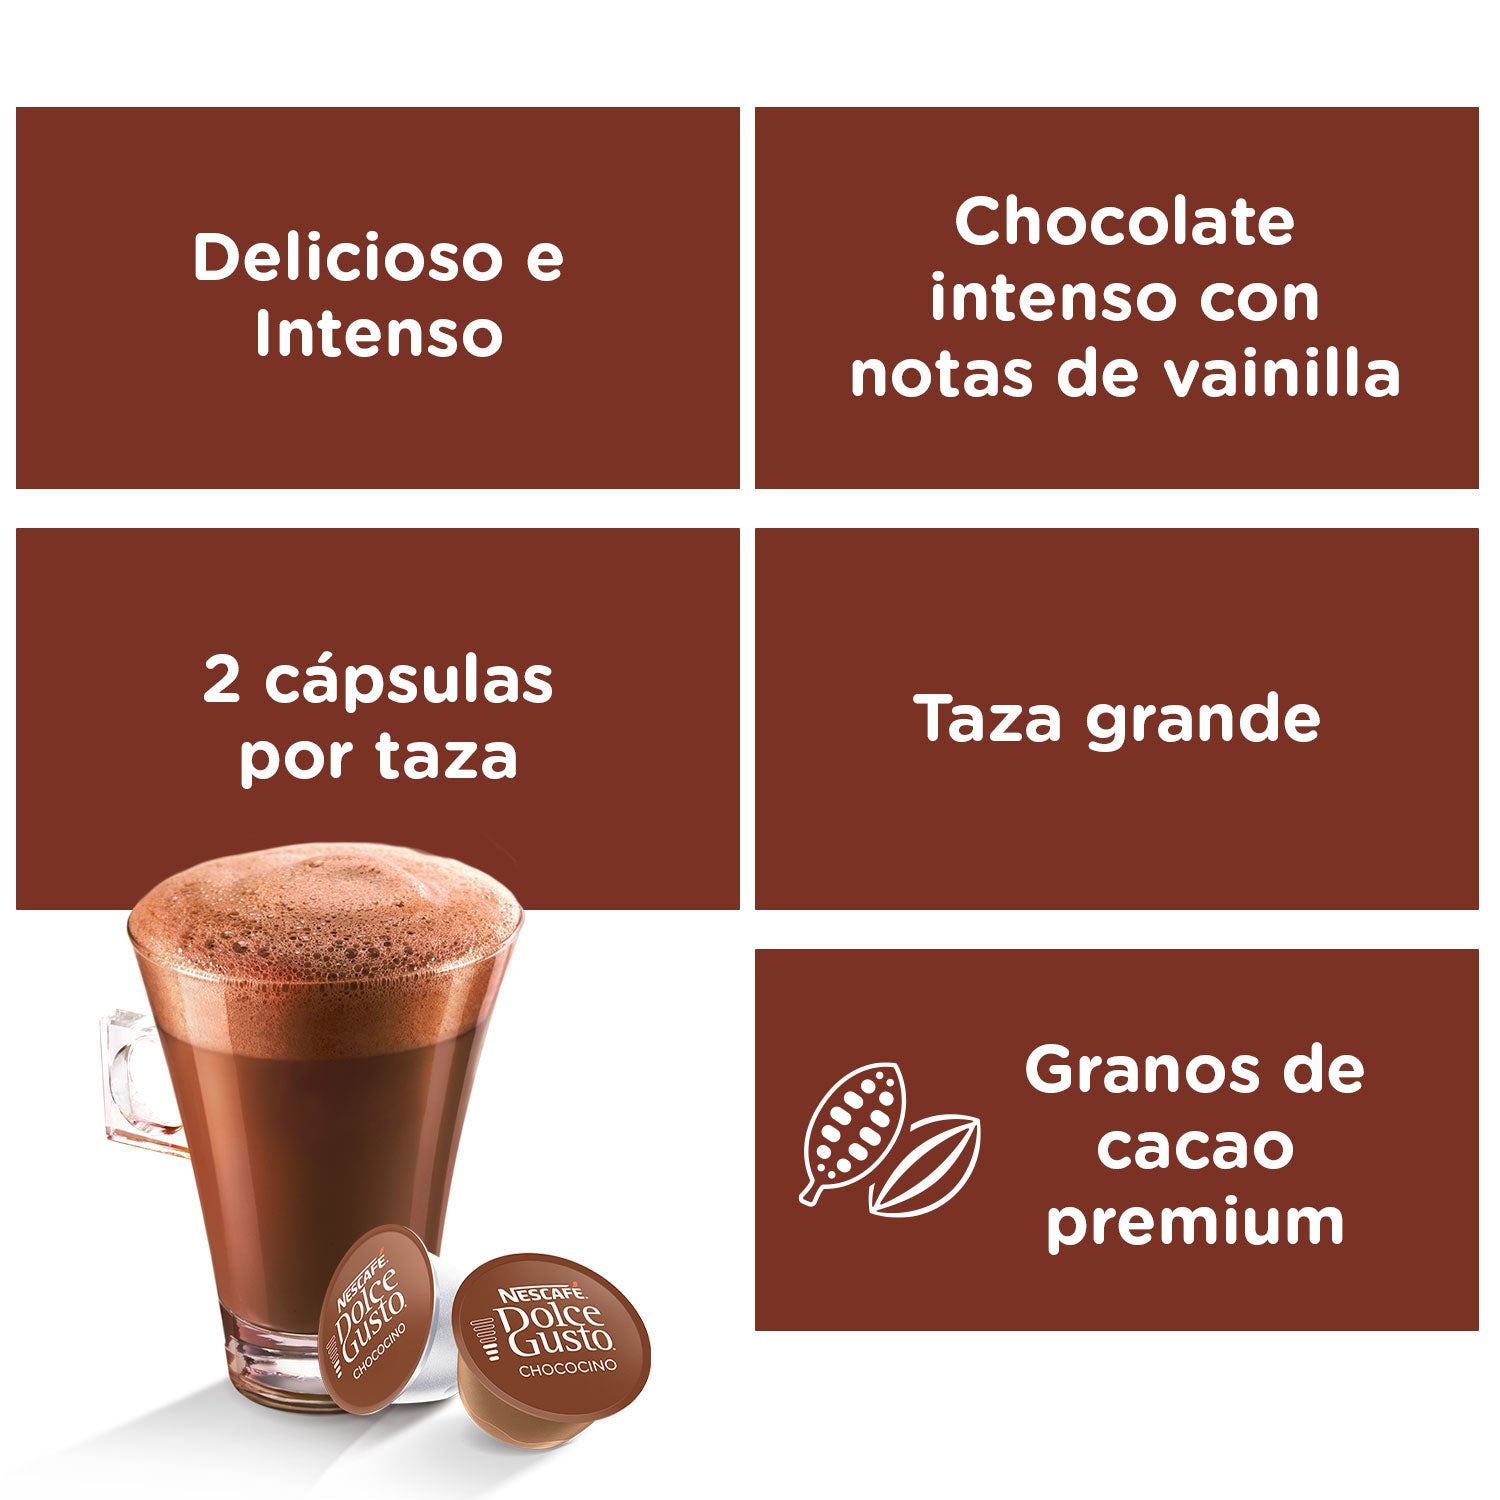 Chococcino Nescafé Dolce Gusto - Caja de 16 cápsulas en